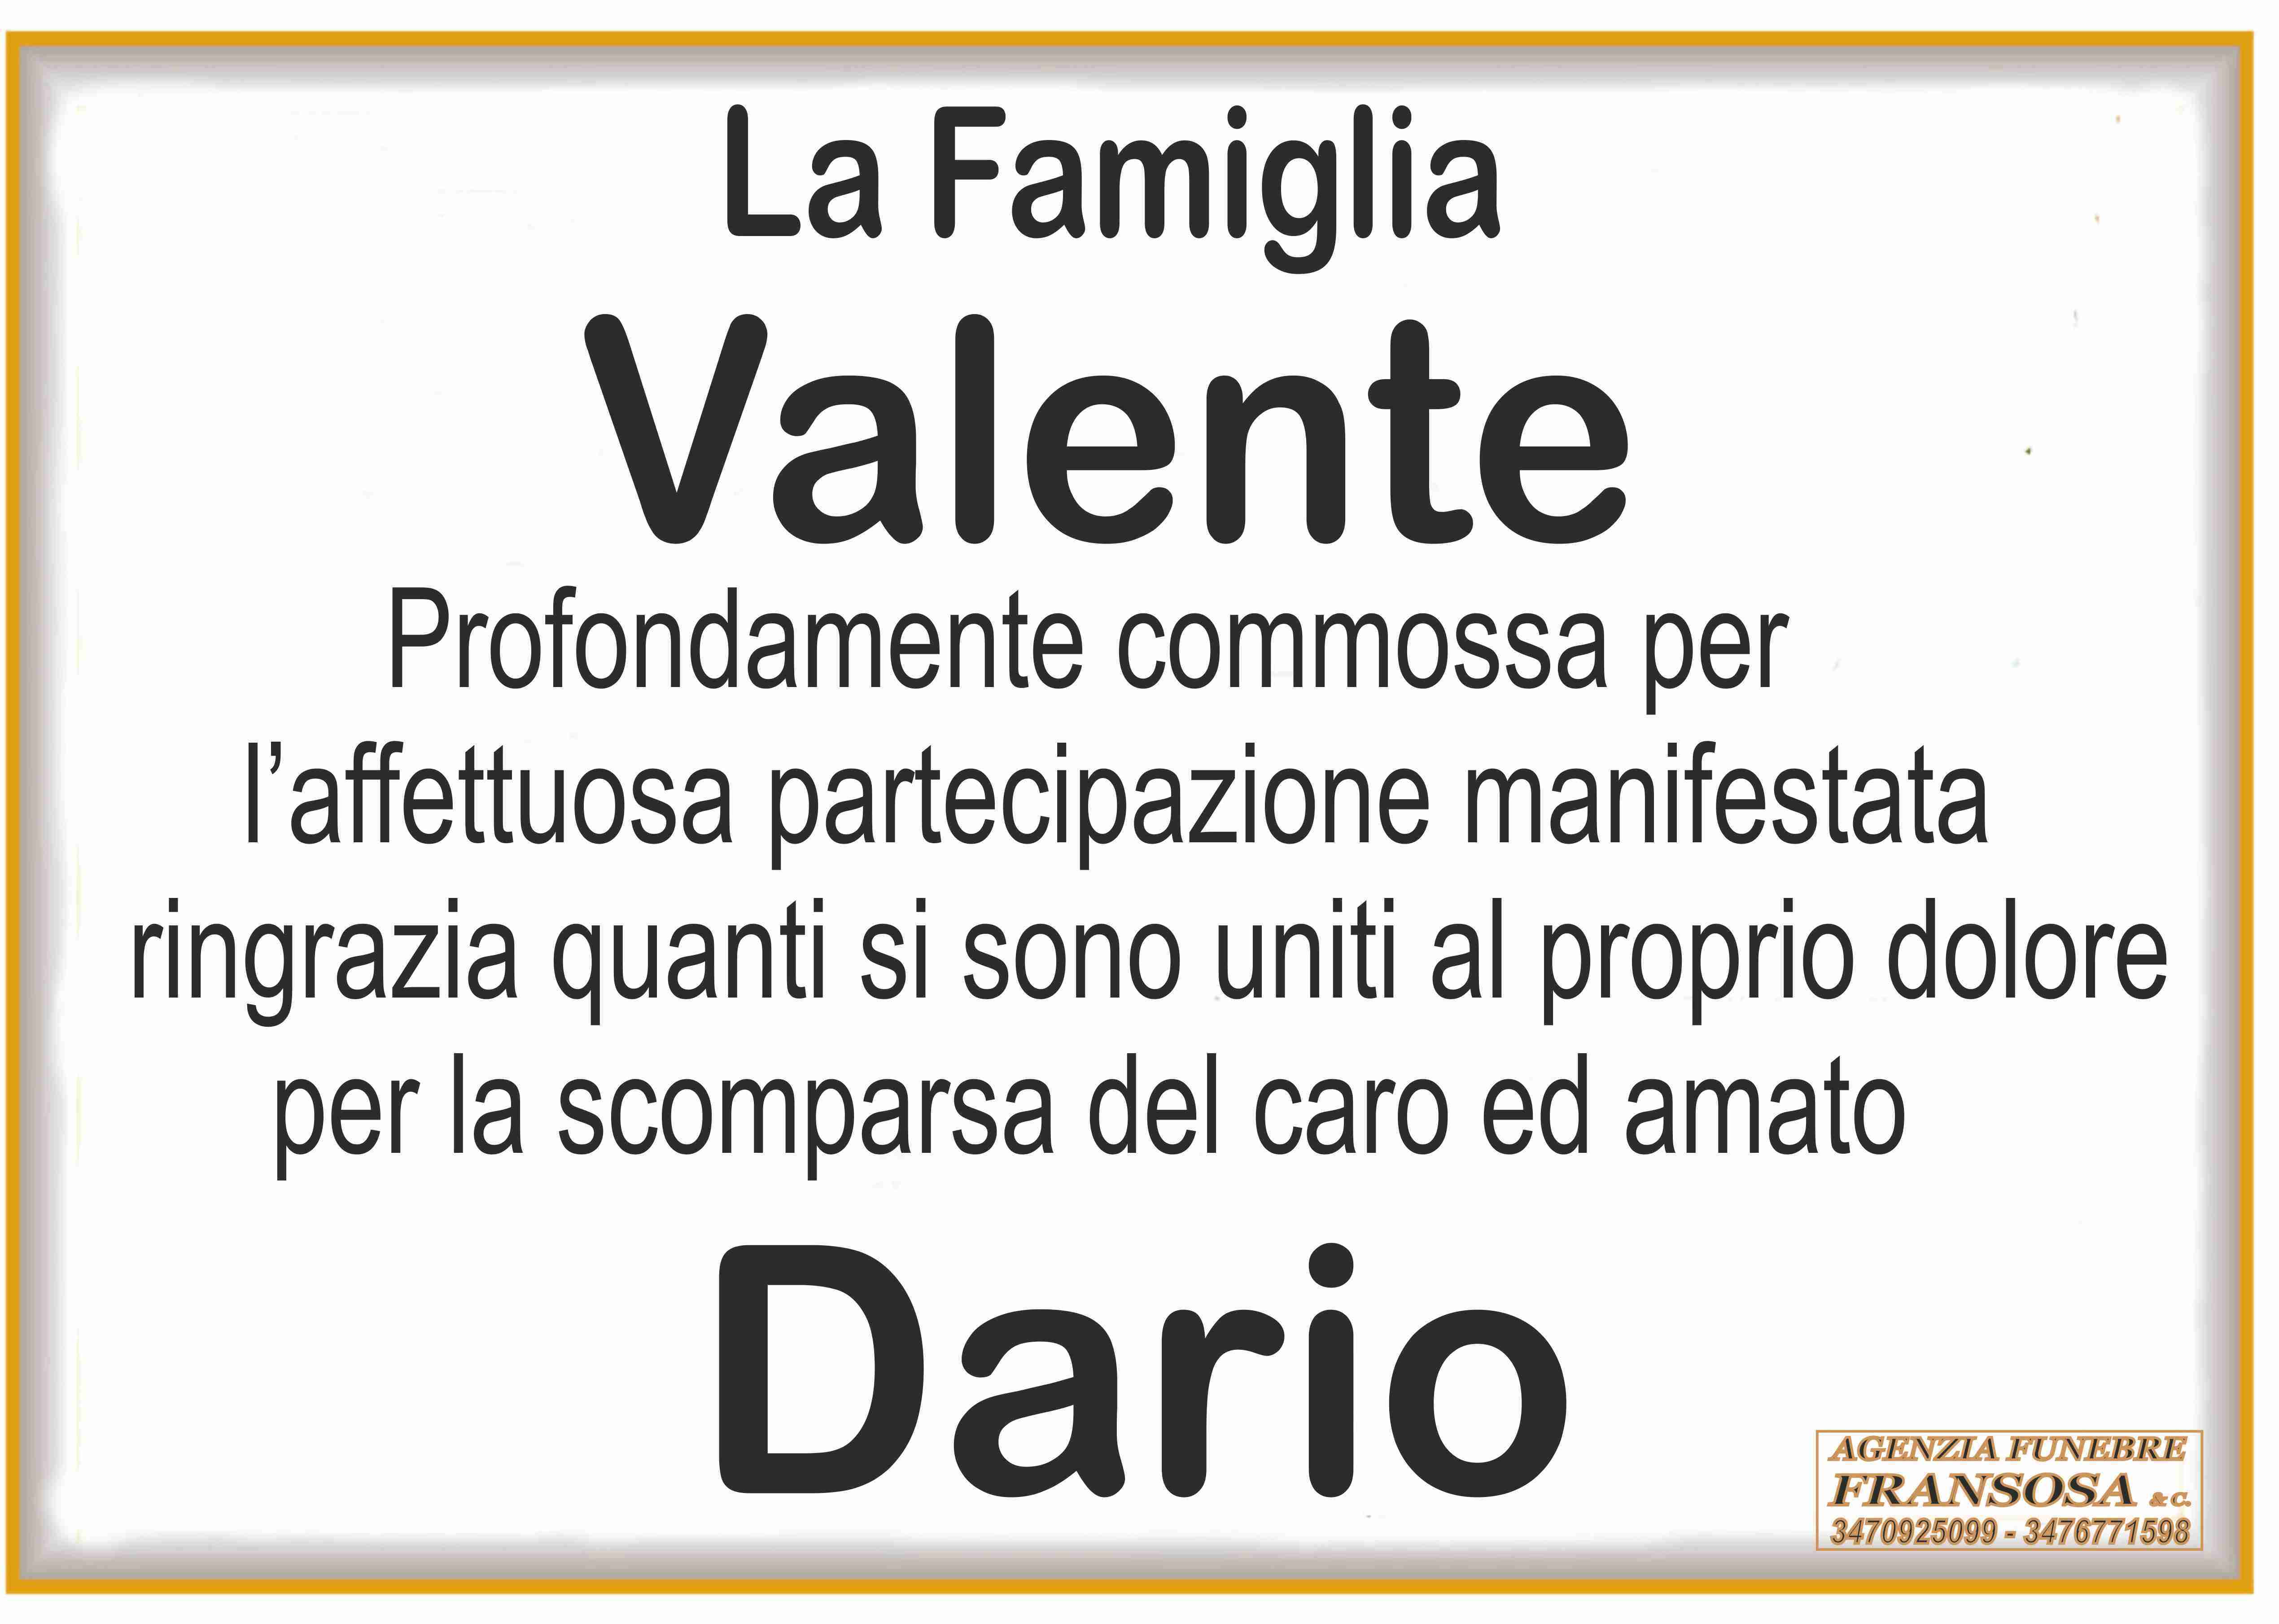 Dario Valente